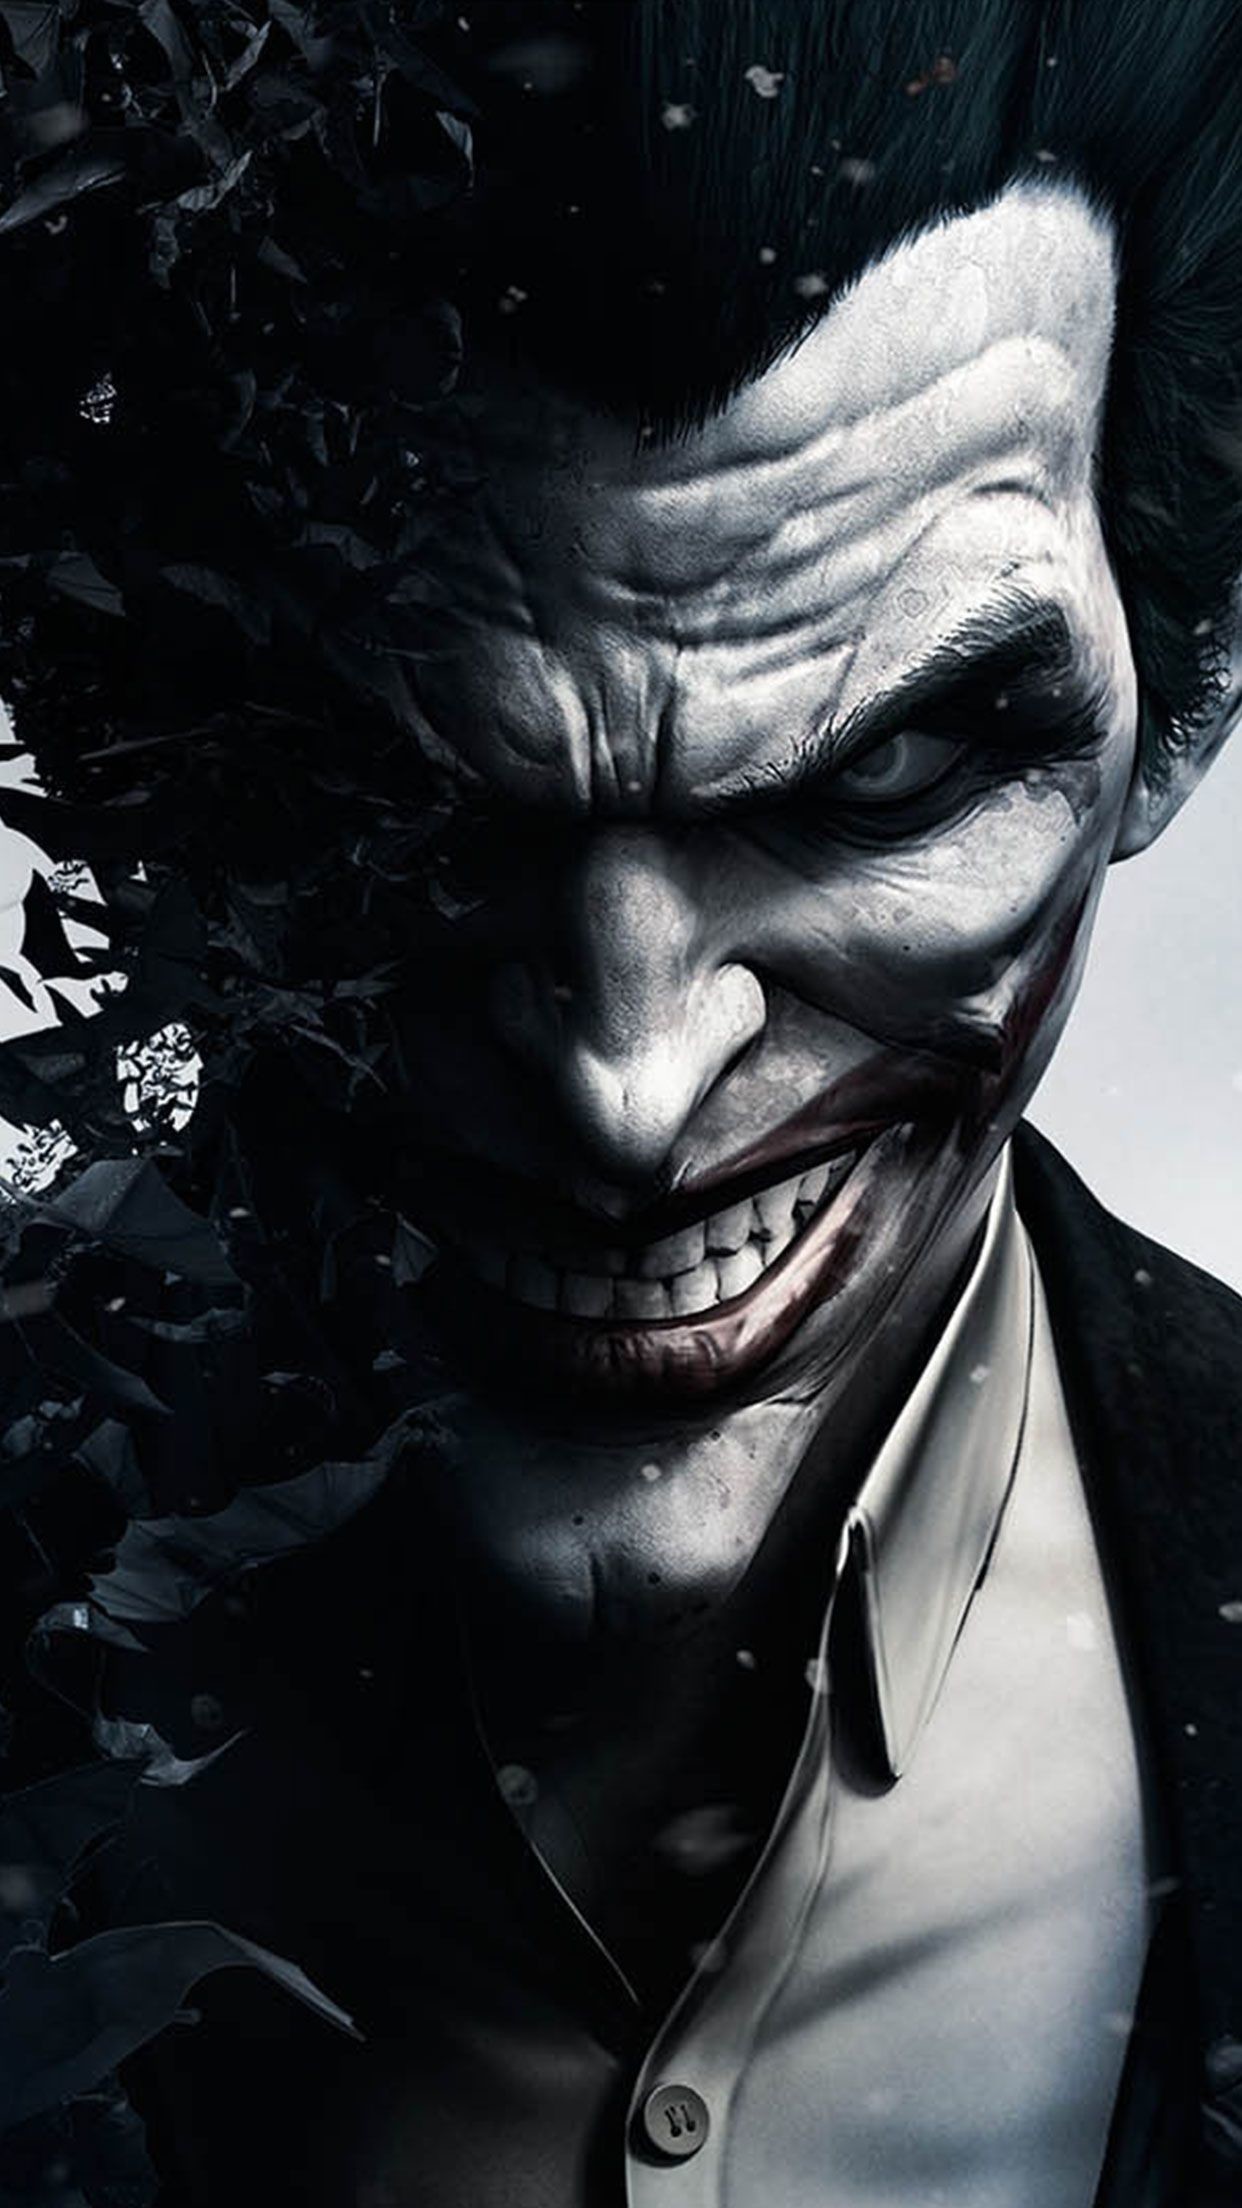 Comics Joker 4k Ultra HD Wallpaper by Muhammad Ashraf